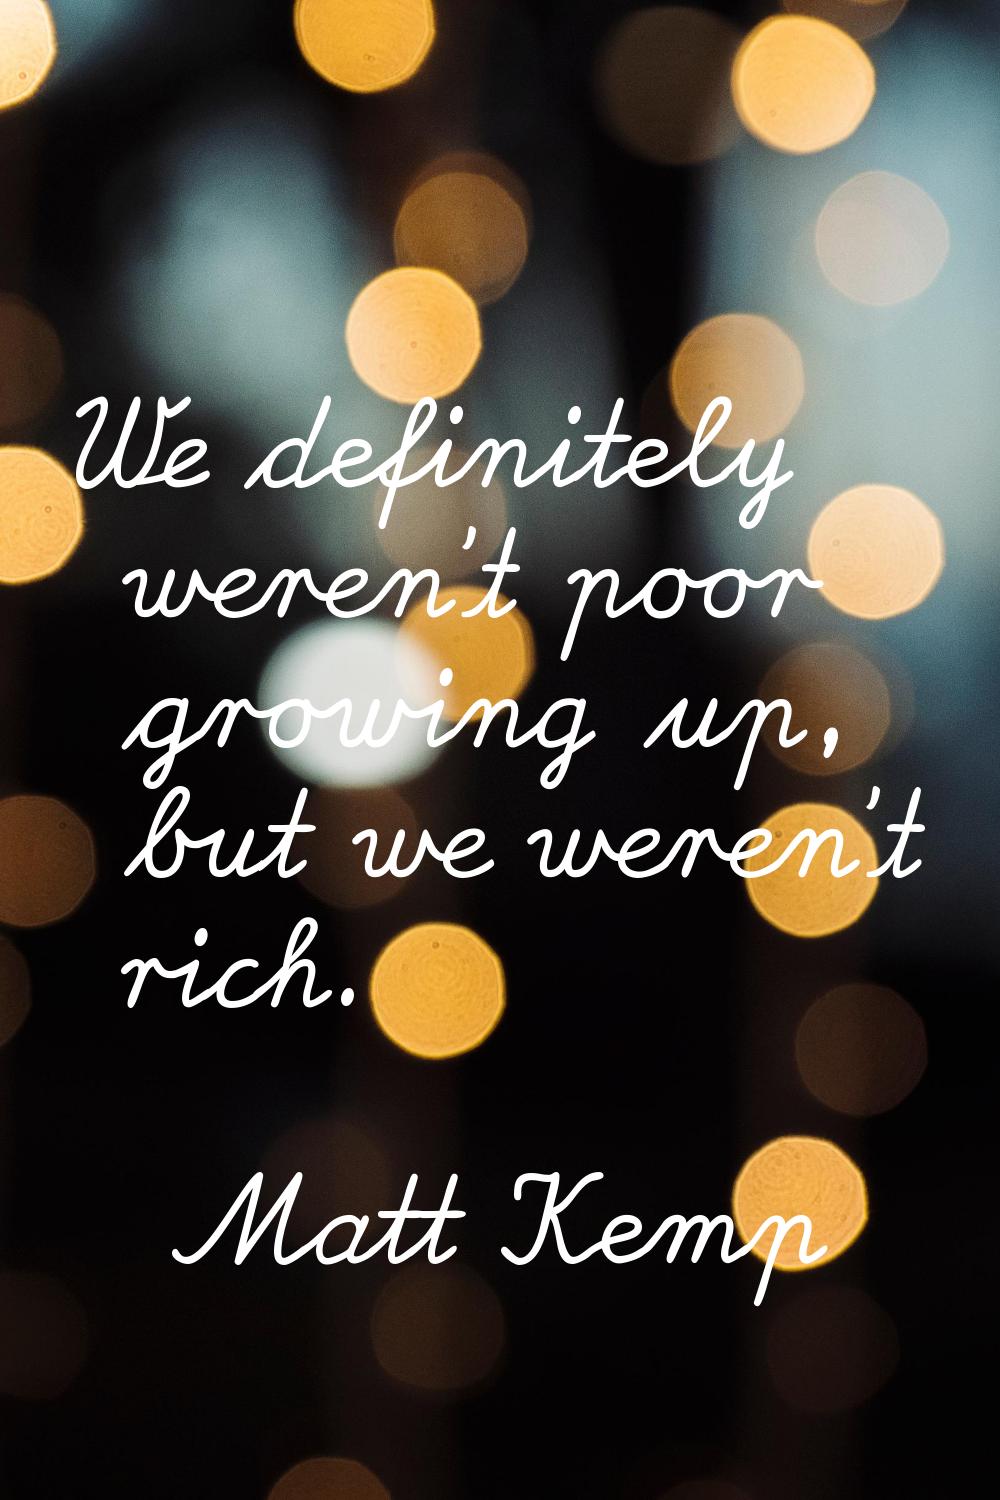 We definitely weren't poor growing up, but we weren't rich.